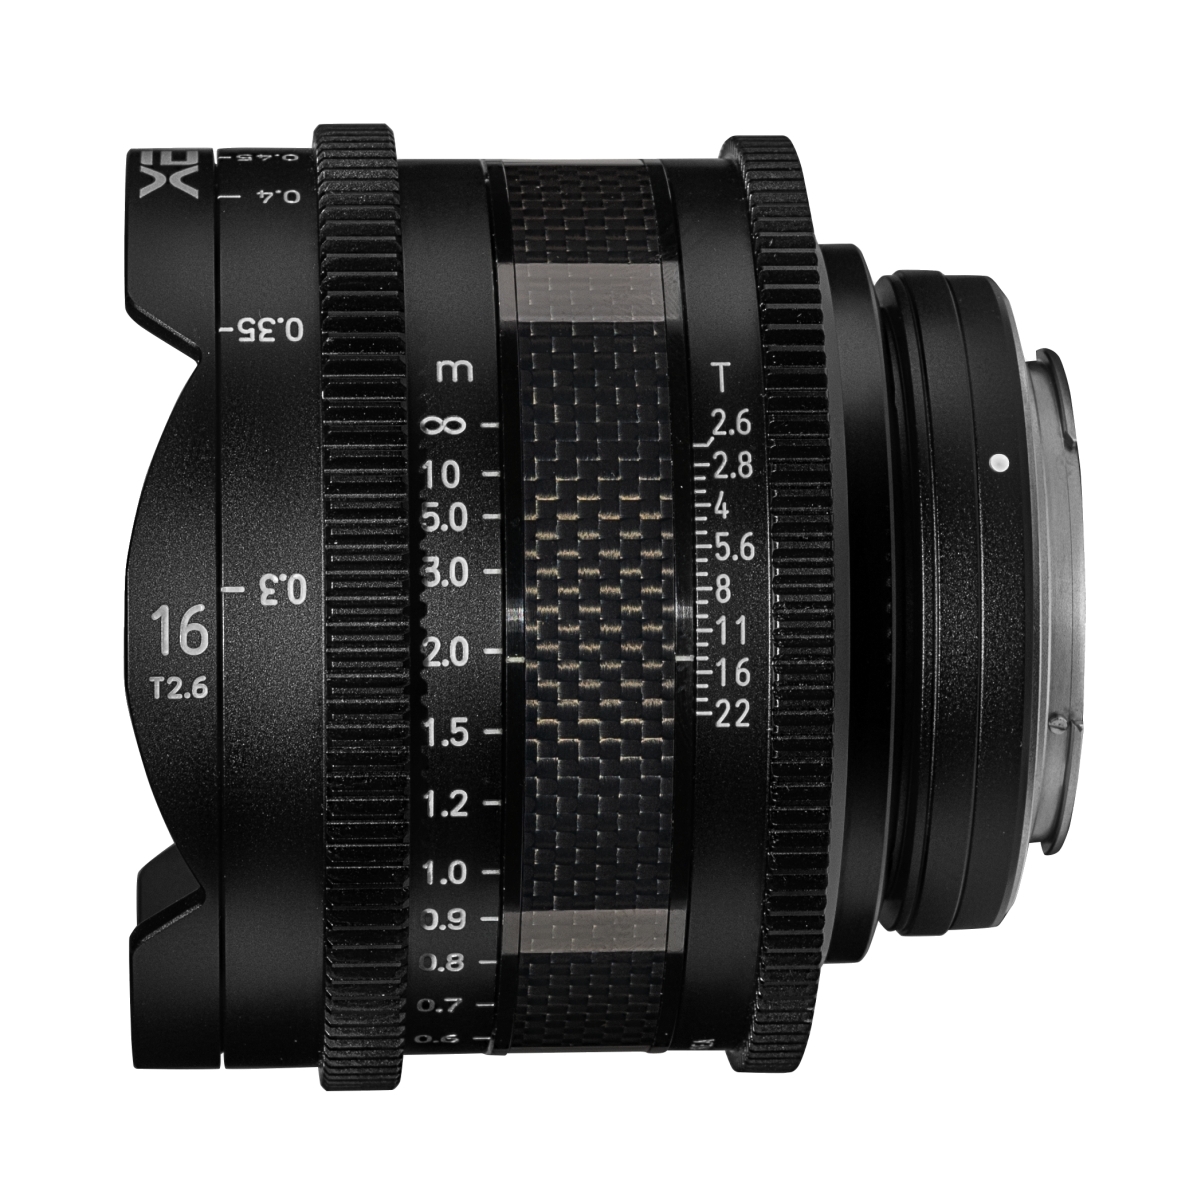 XEEN CF Cinema 16mm T2.6 Canon EF Vollformat